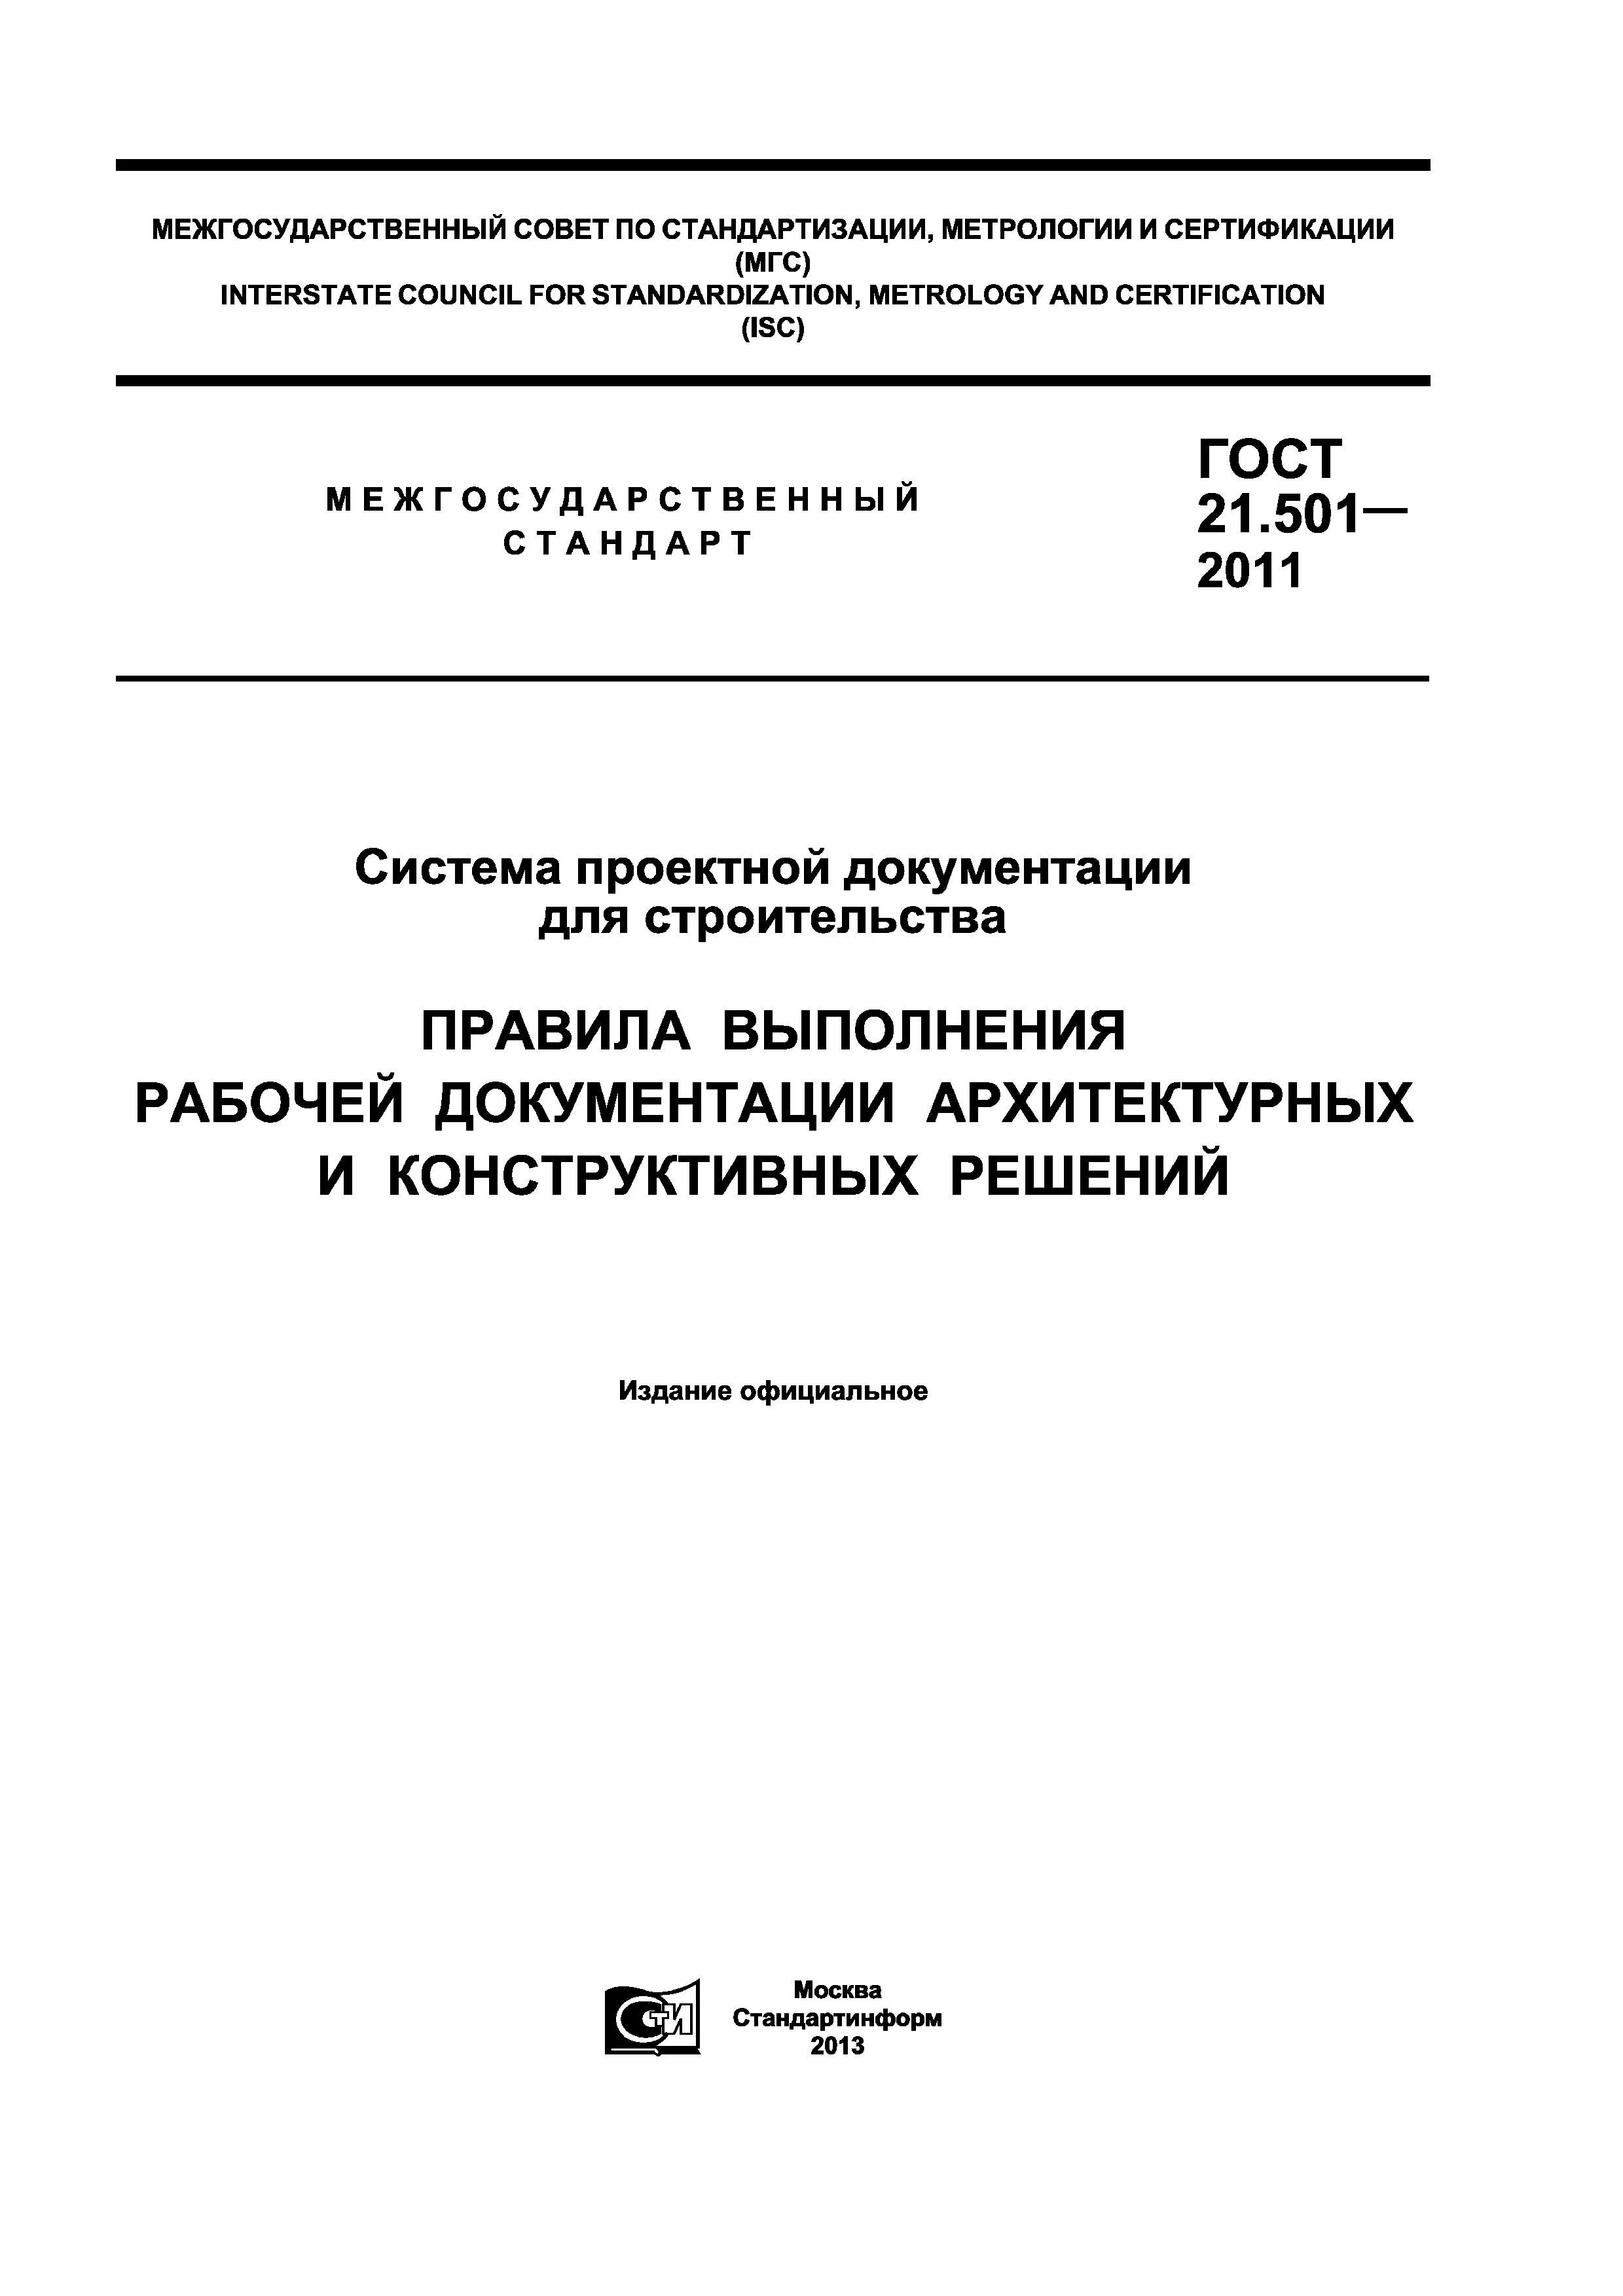 Скачать ГОСТ 21.501-2011 Система Проектной Документации Для.